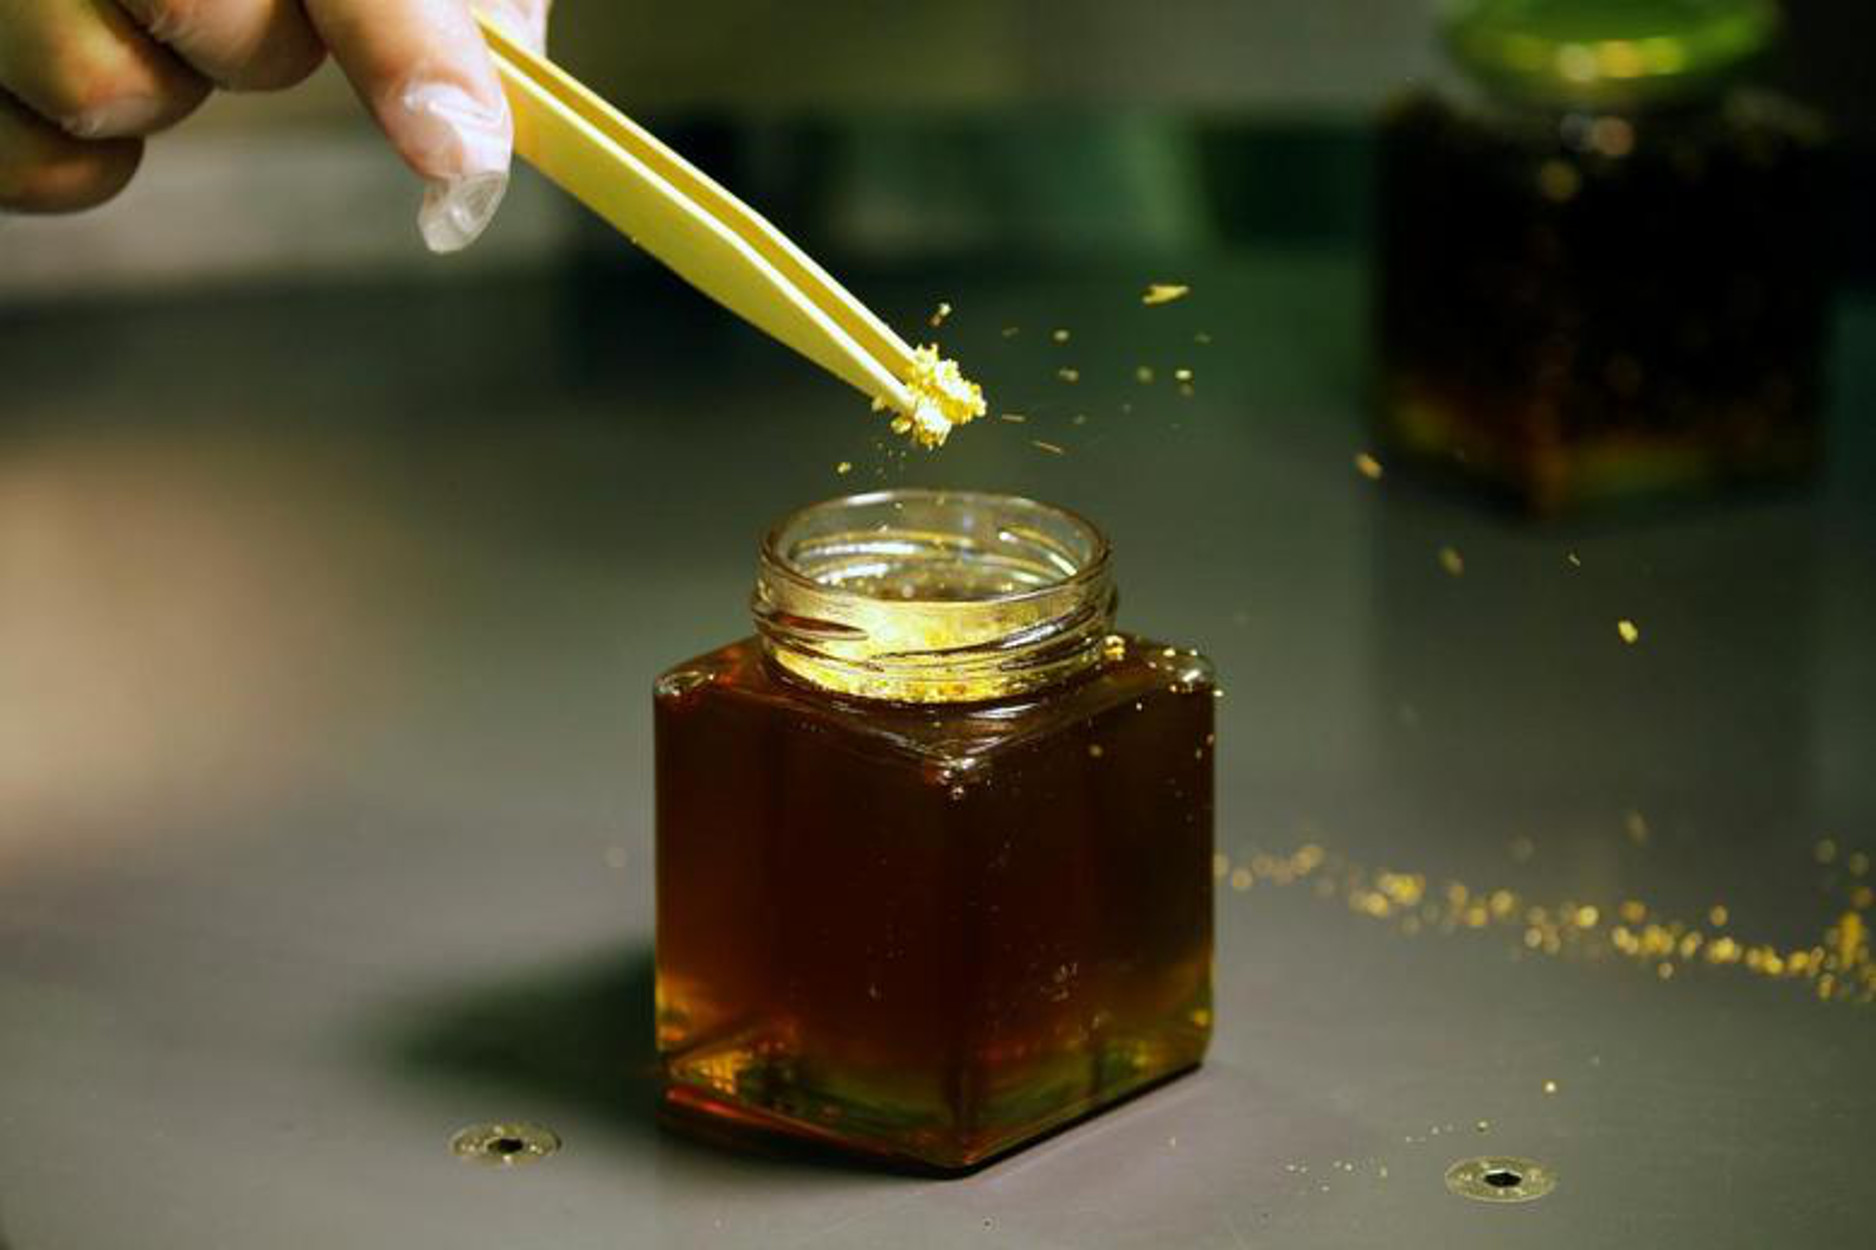 Τι αναφέρει ο Μελισσοκομικός Σύλλογος Χανίων για το μέλι που ανακλήθηκε από τον ΕΦΕΤ